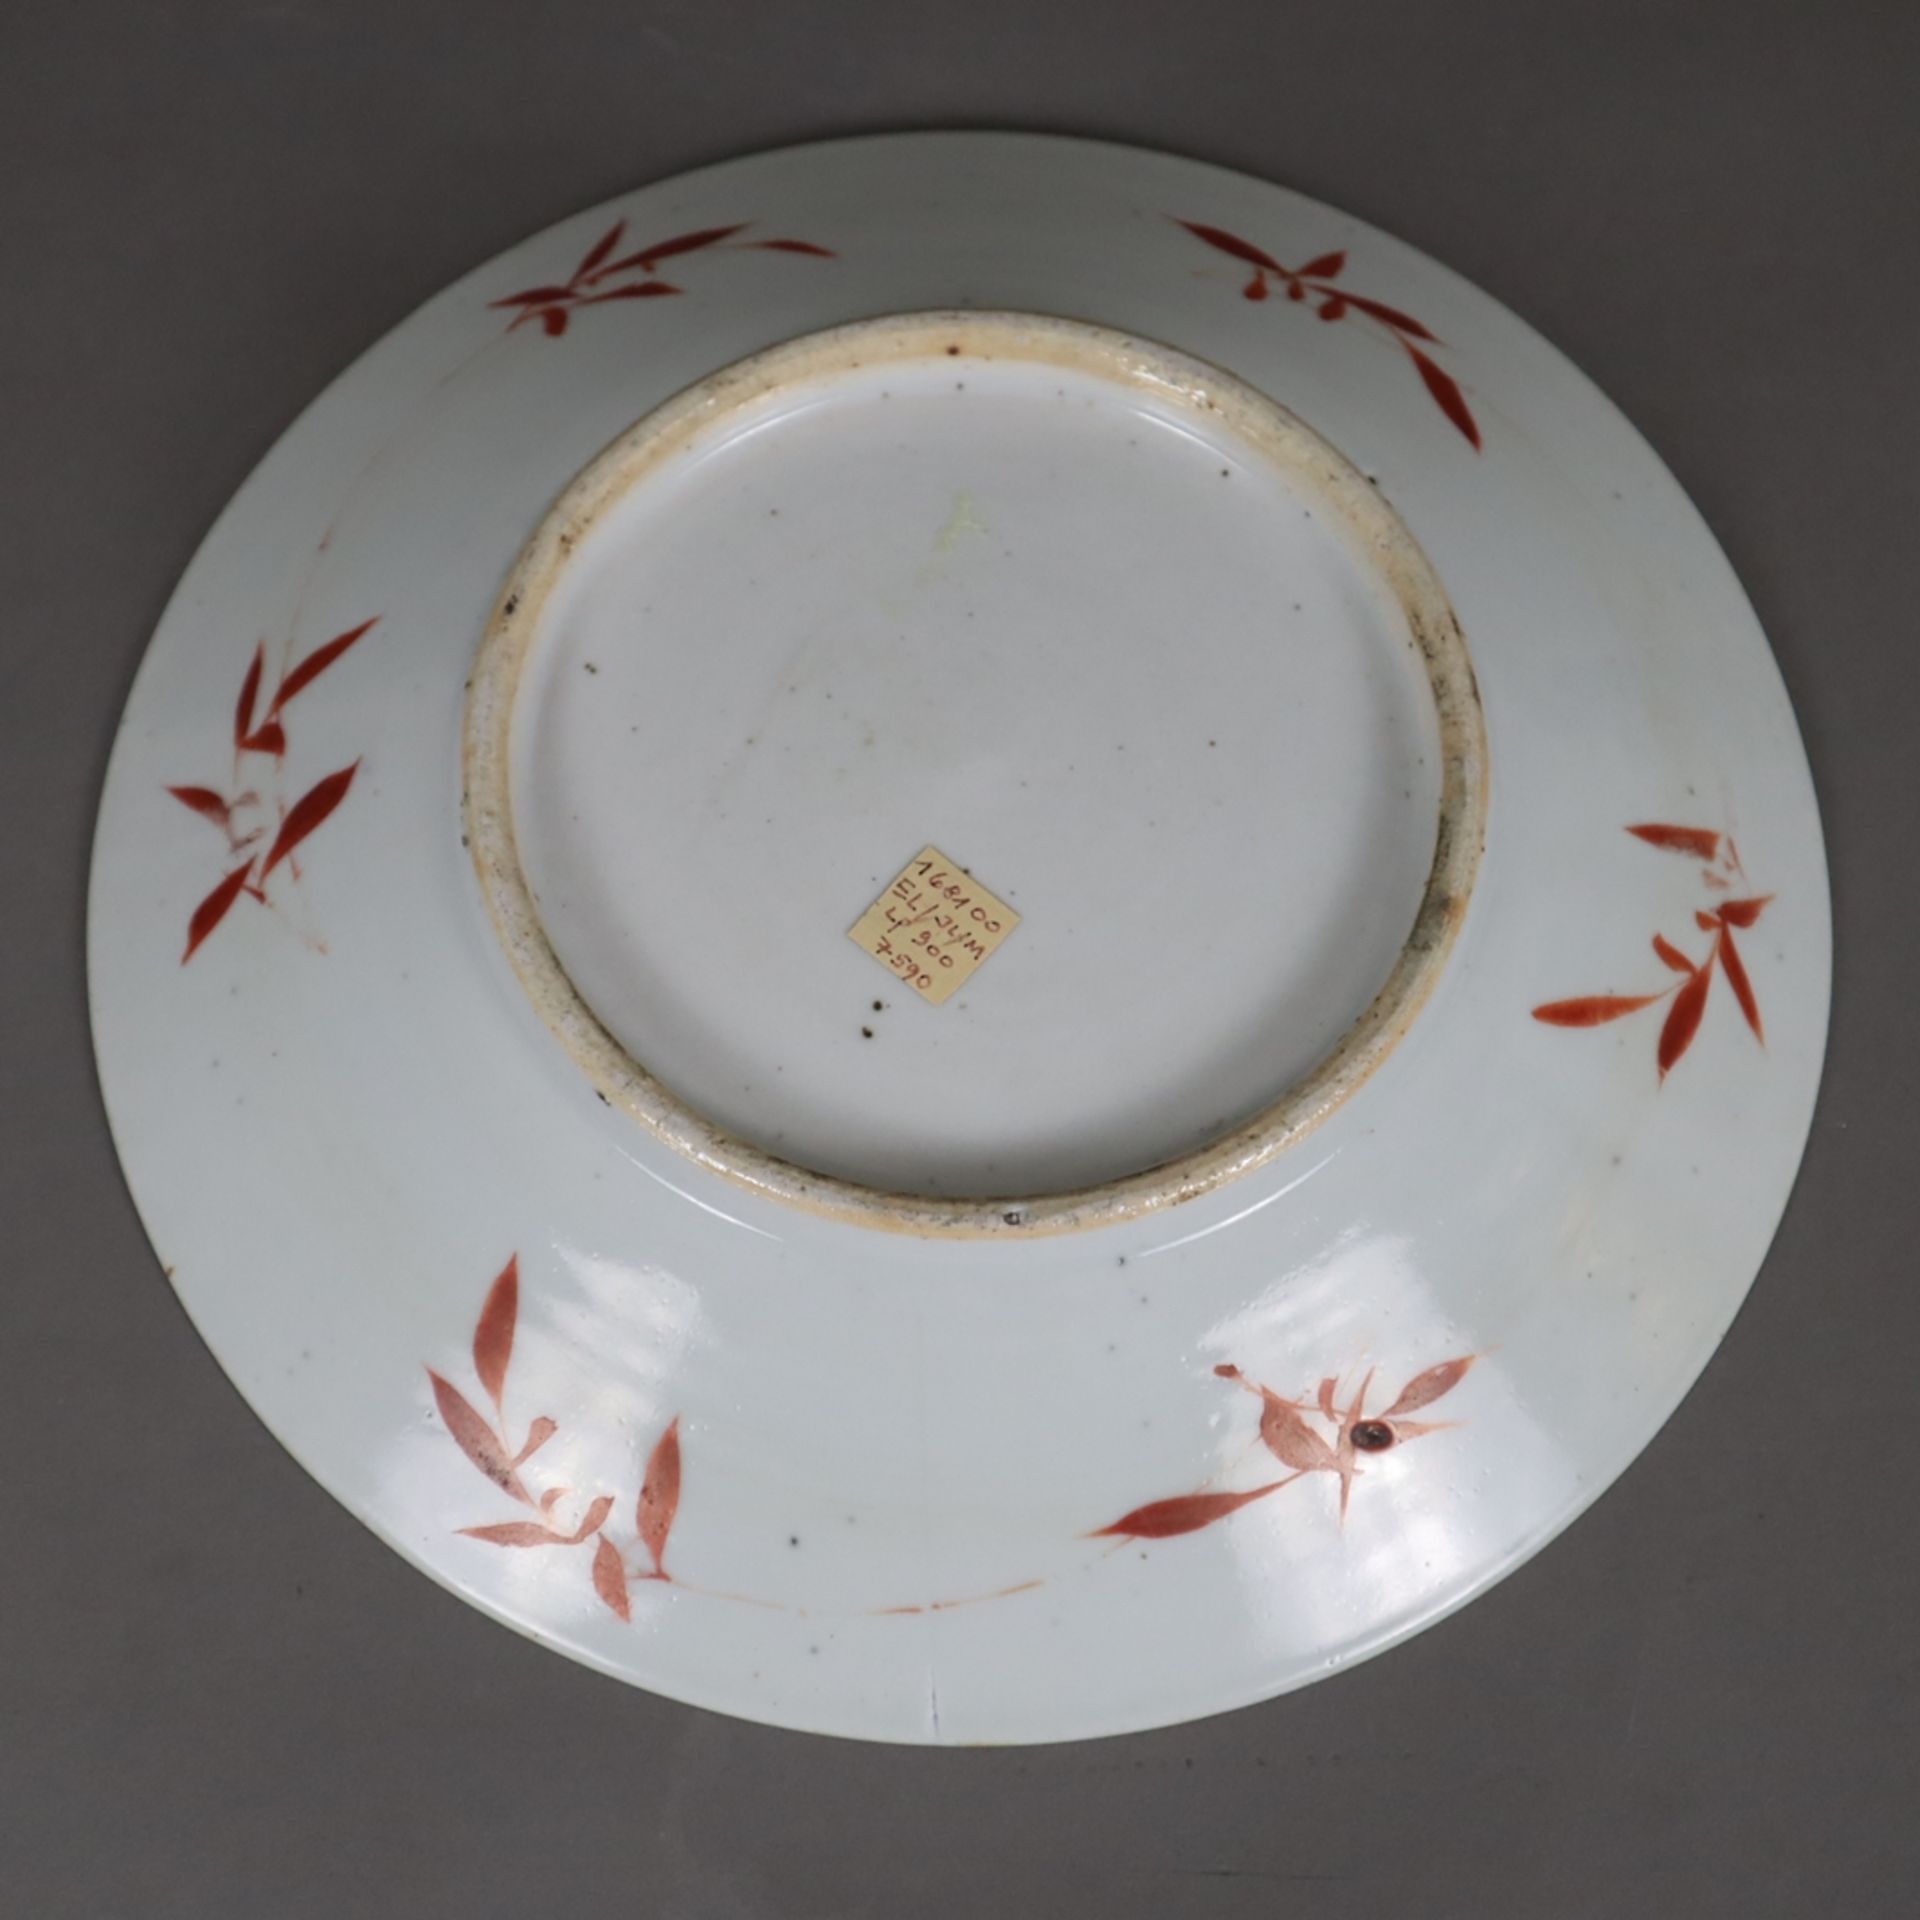 Seltener Teller mit Lotosmotiv - China, ausgehende Qing-Dynastie, 19./20.Jh., Porzellan mit Lotosra - Image 6 of 8